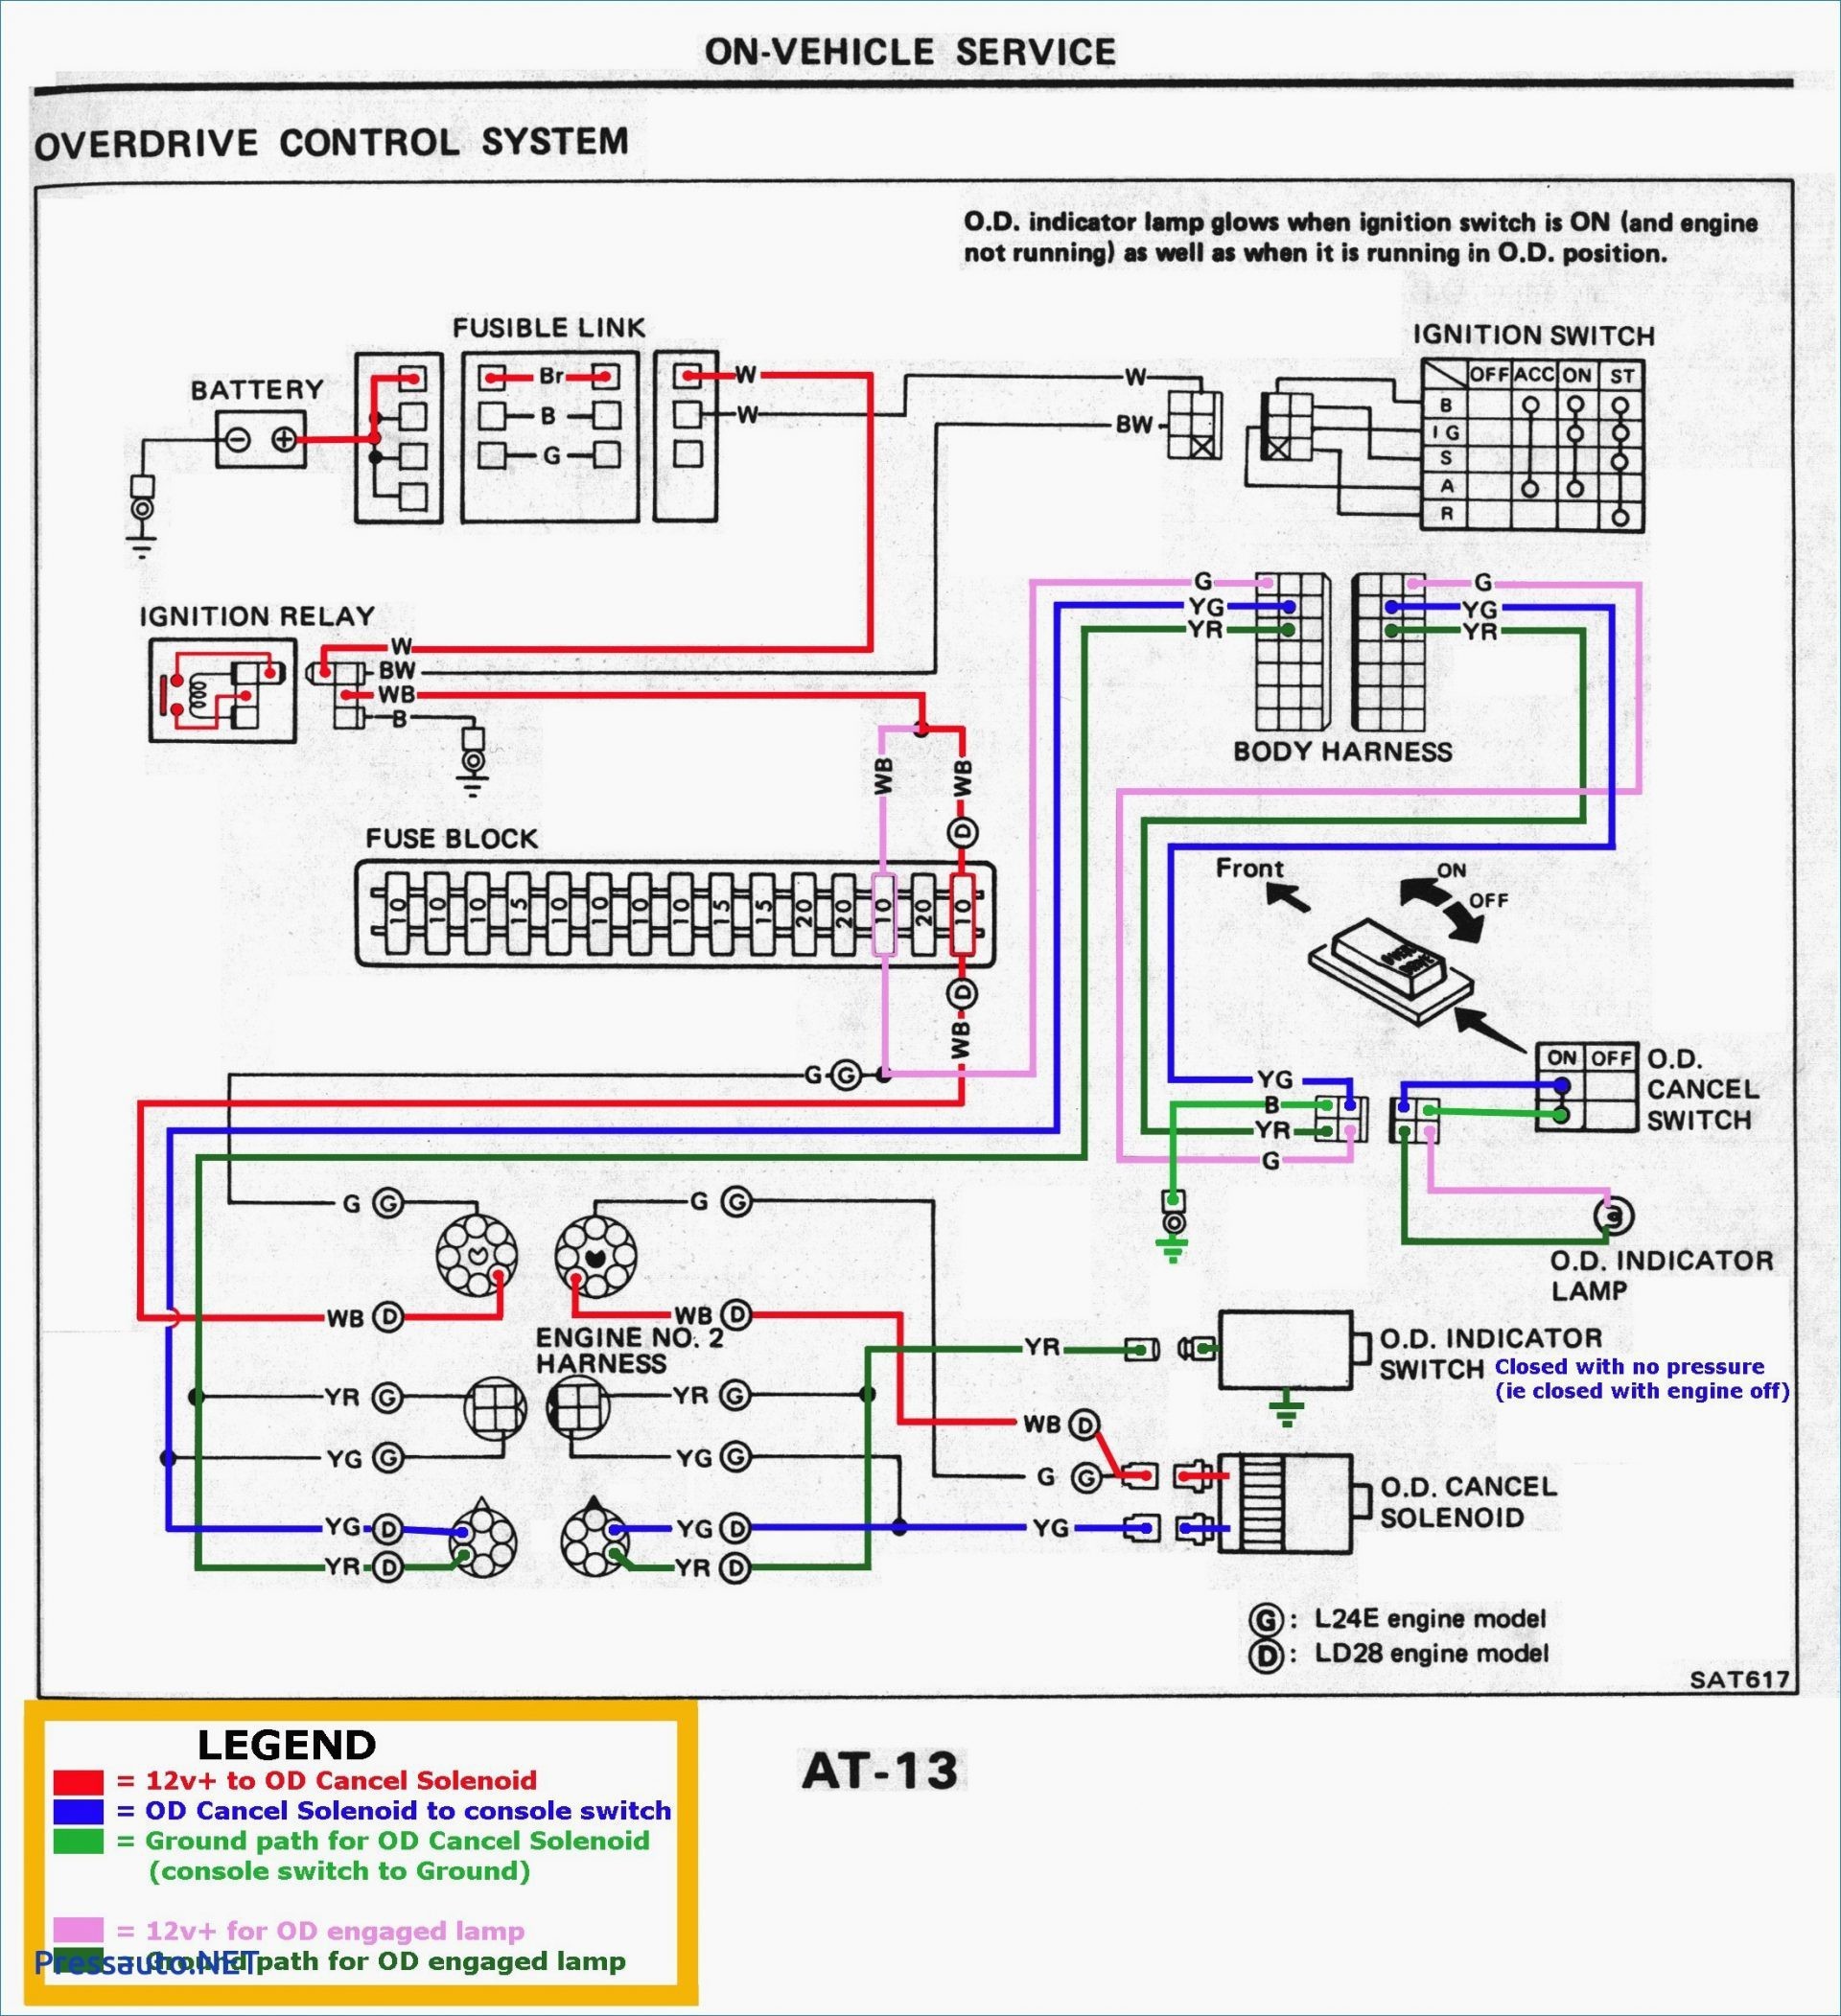 2004 Chevy Silverado Wiring Diagram 2004 Silverado Trailer Wiring Diagram Electrical Circuit 2002 Chevy Of 2004 Chevy Silverado Wiring Diagram